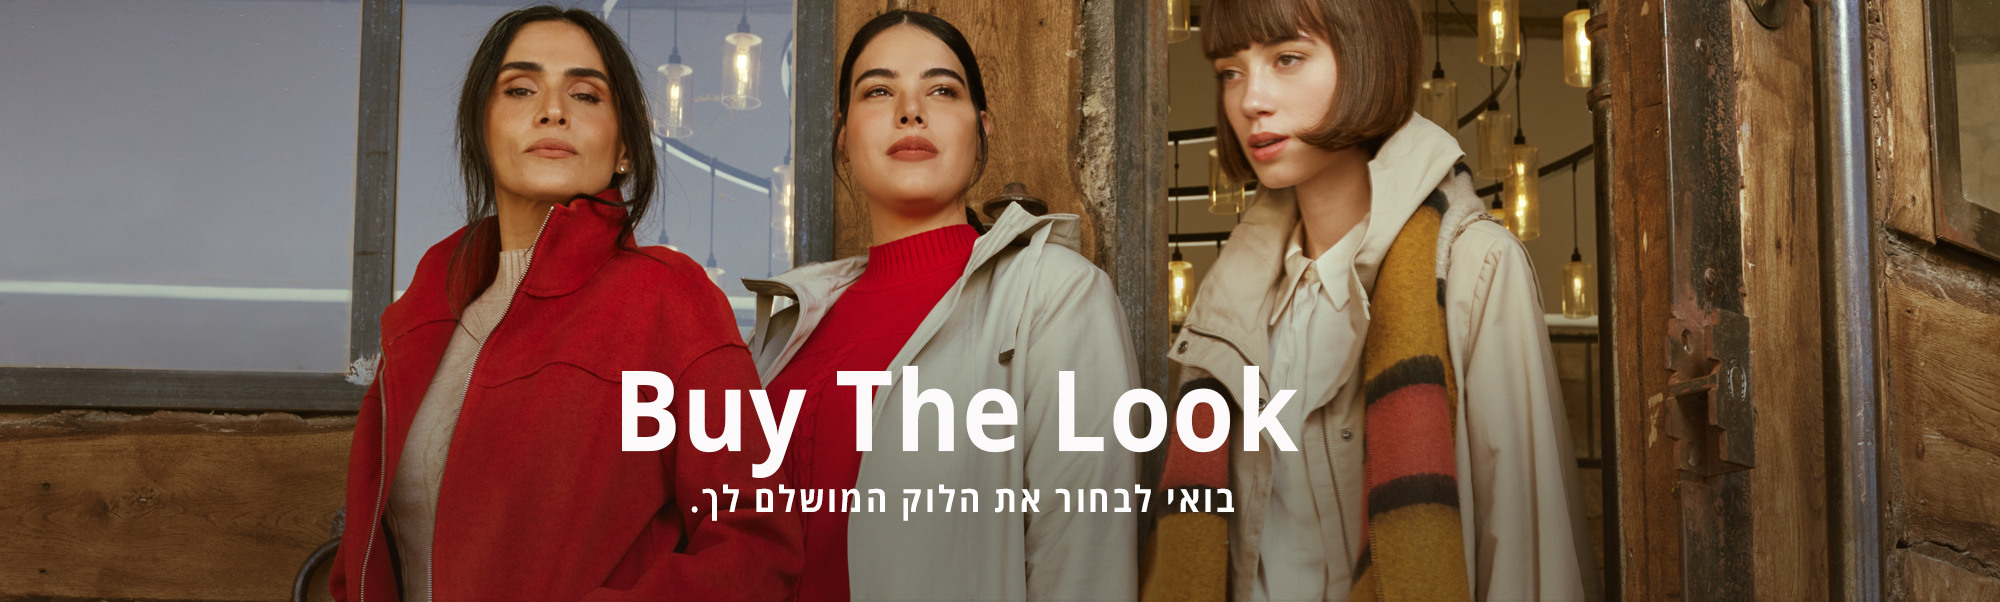 Buy The Look